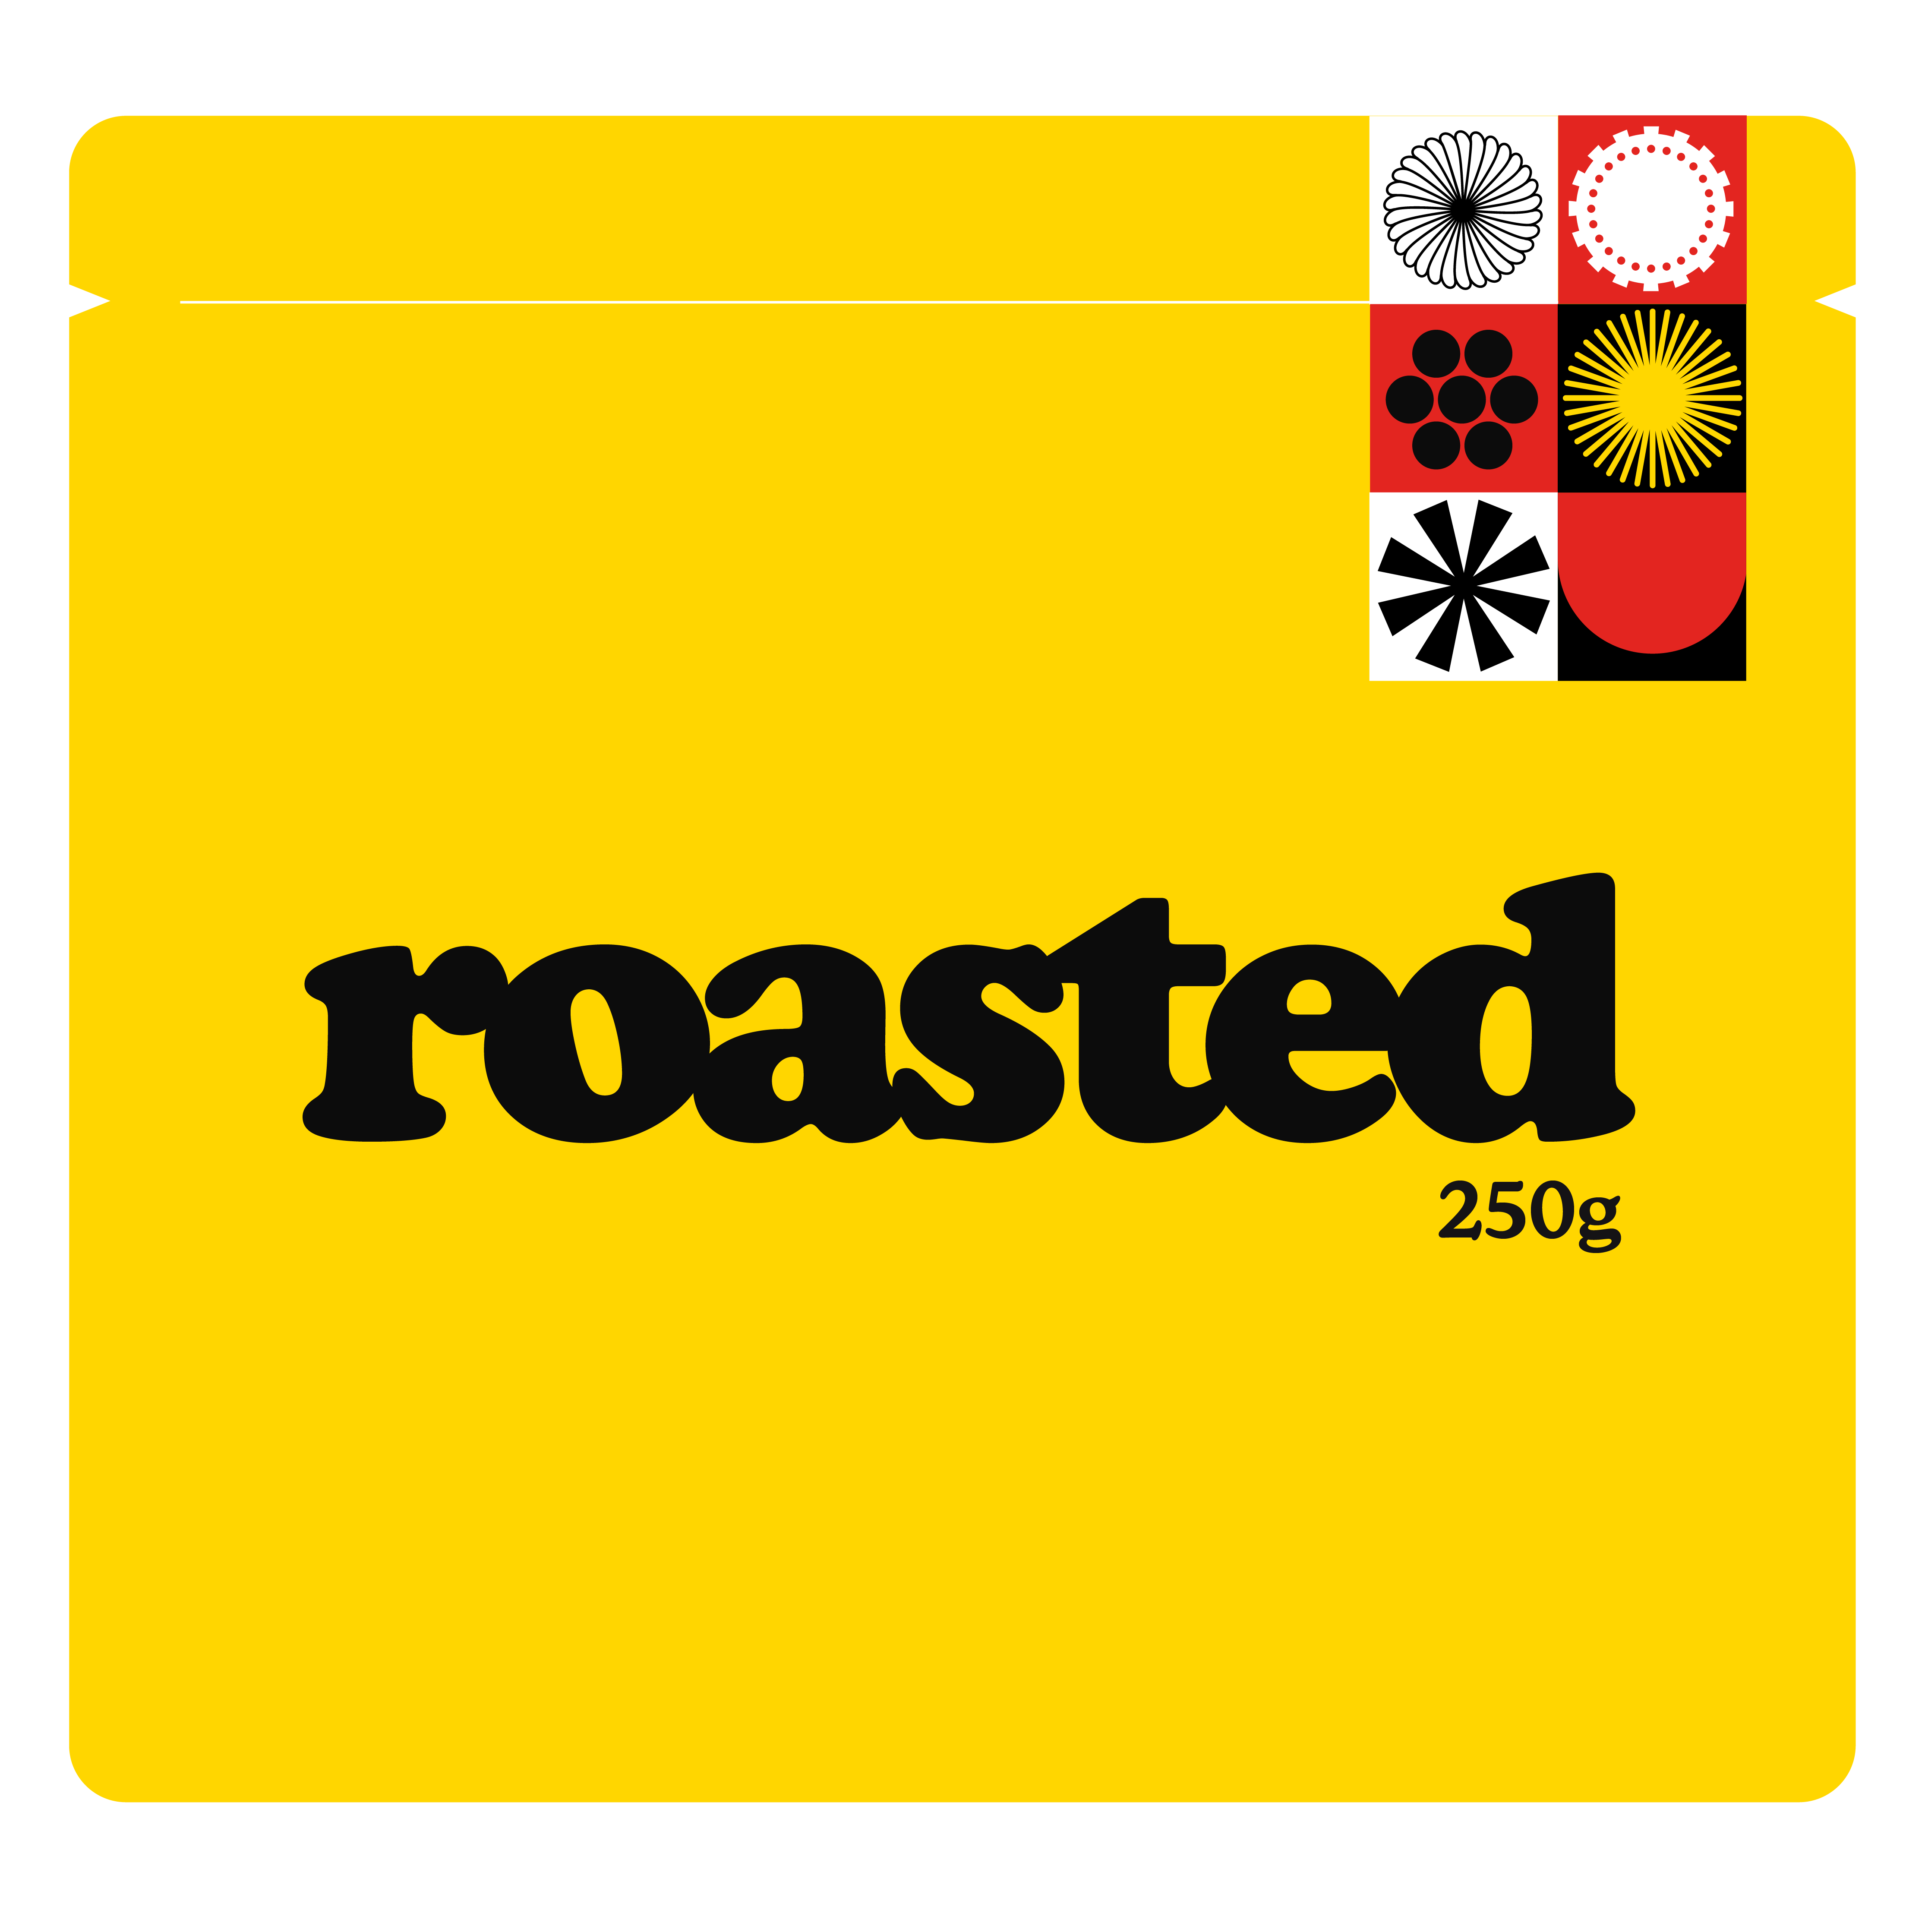 Roaster's Choice Espresso